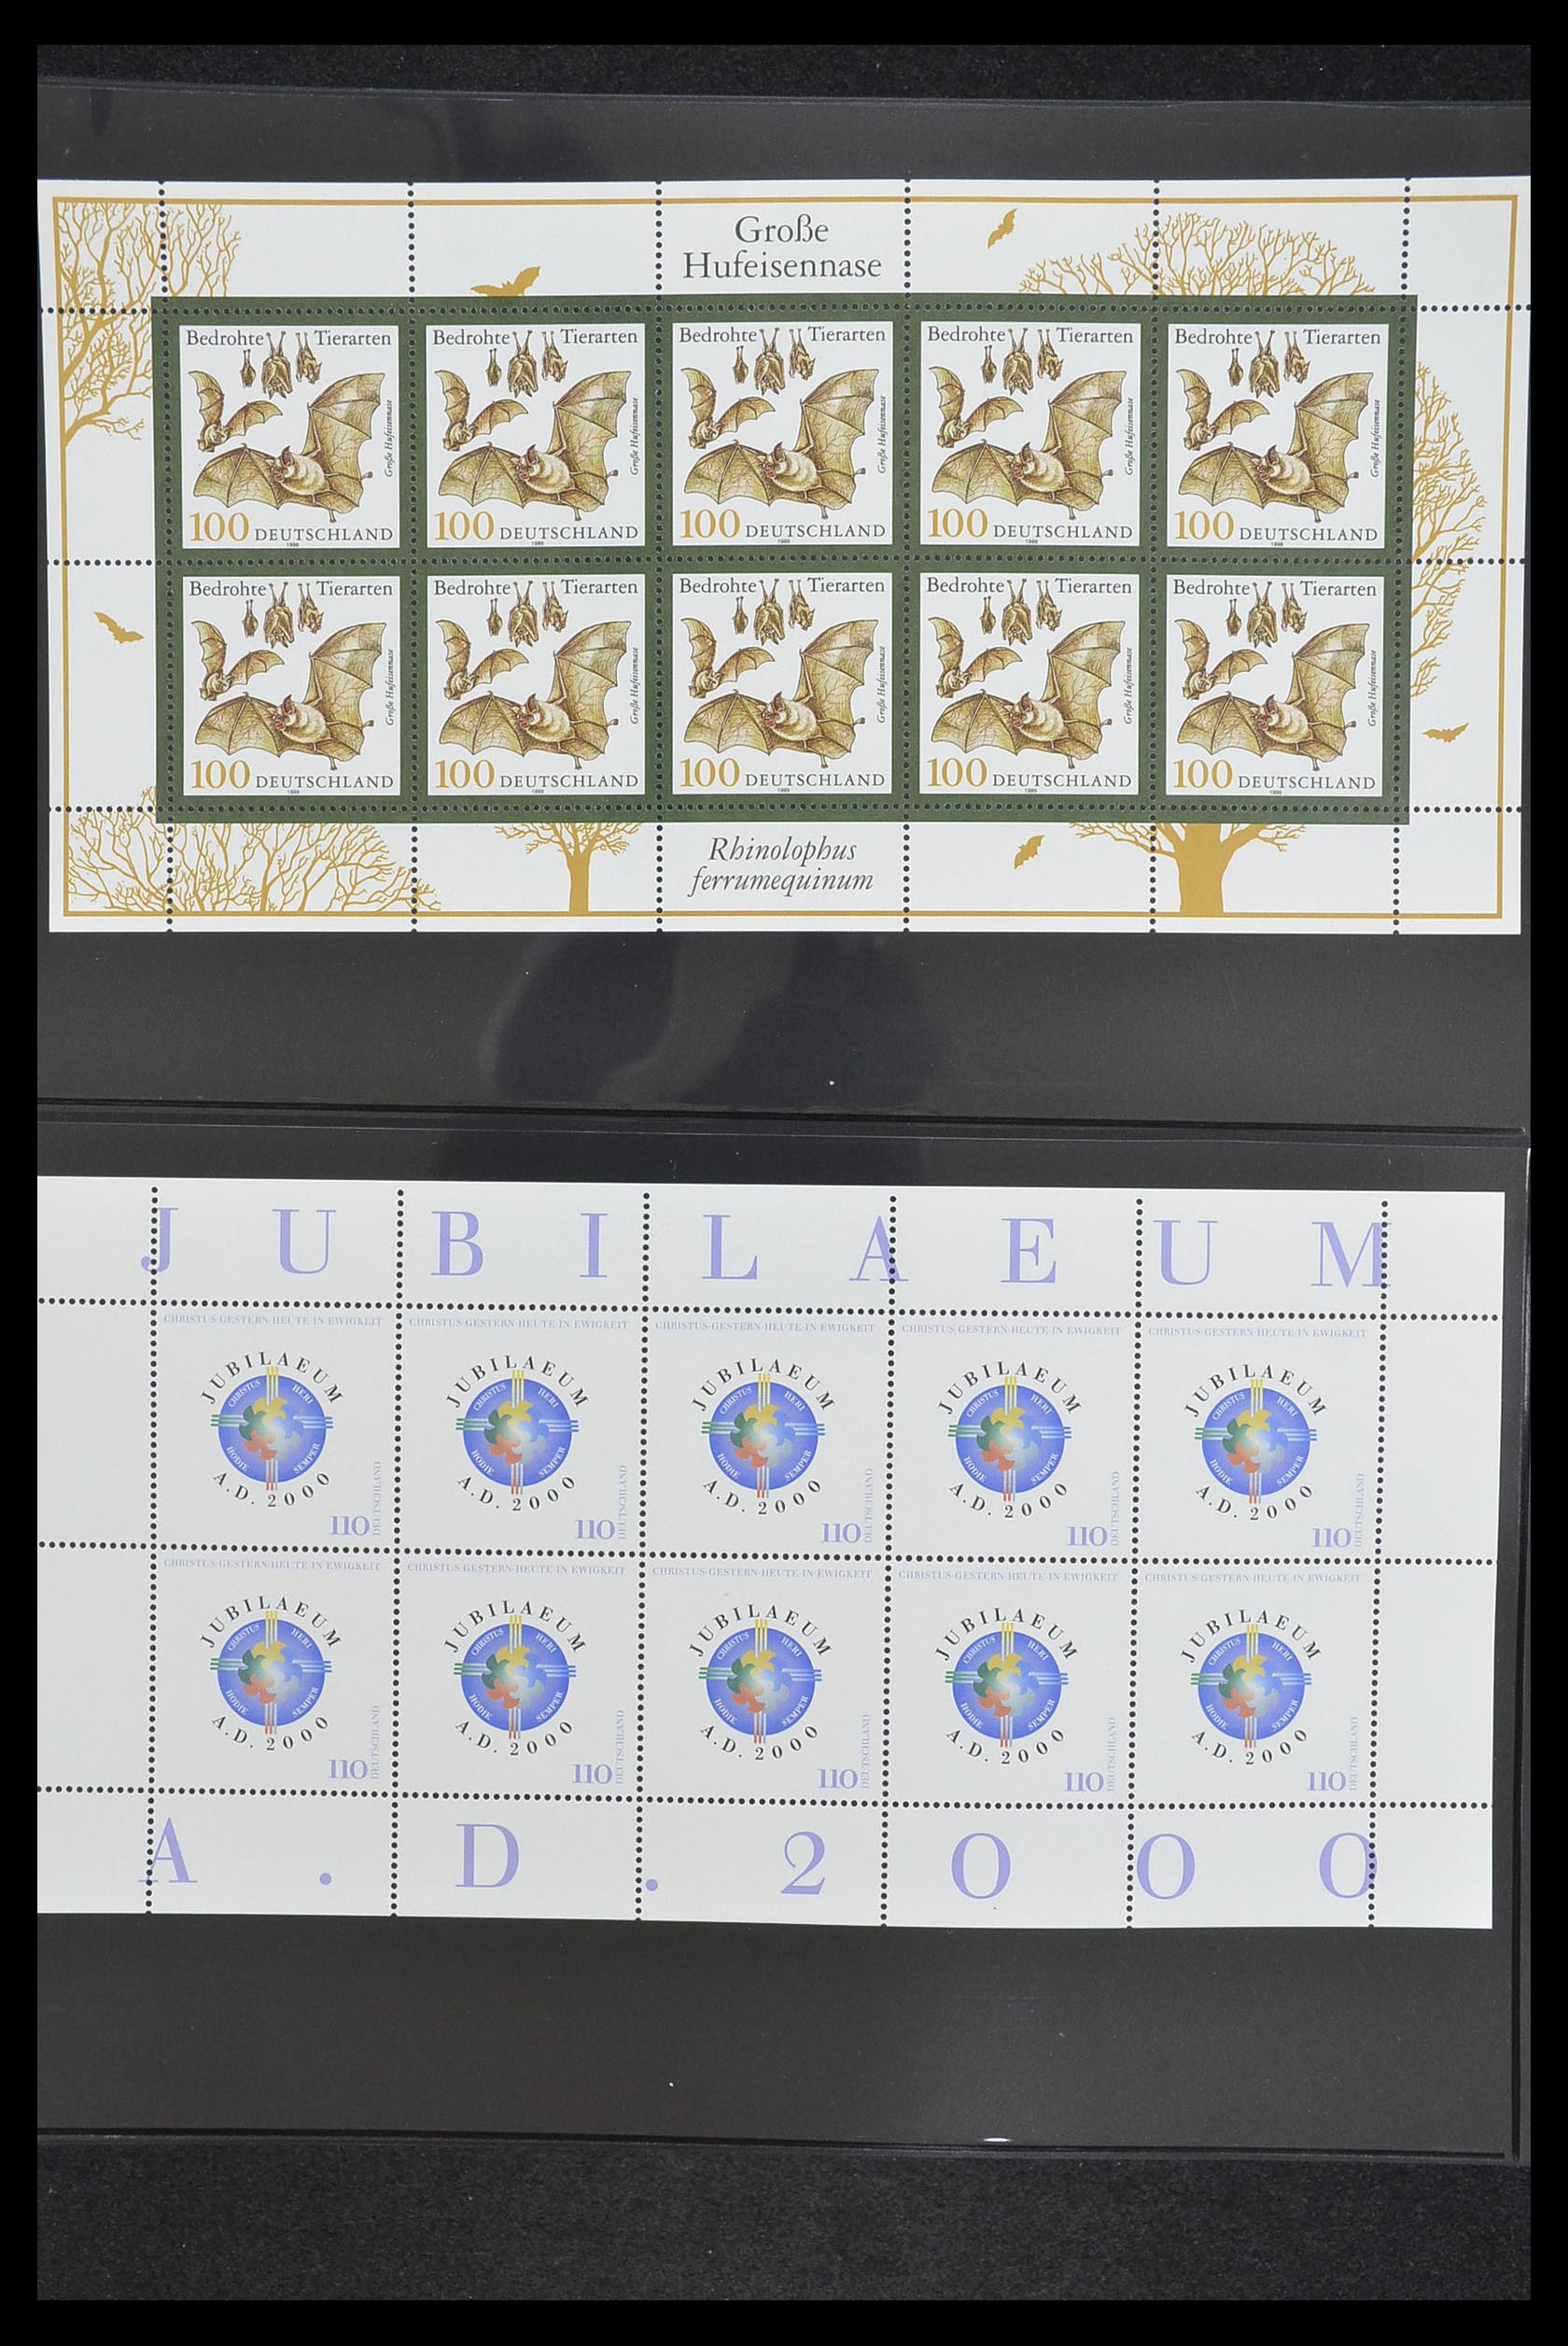 33936 145 - Stamp collection 33936 Bundespost kleinbogen 1994-2000.